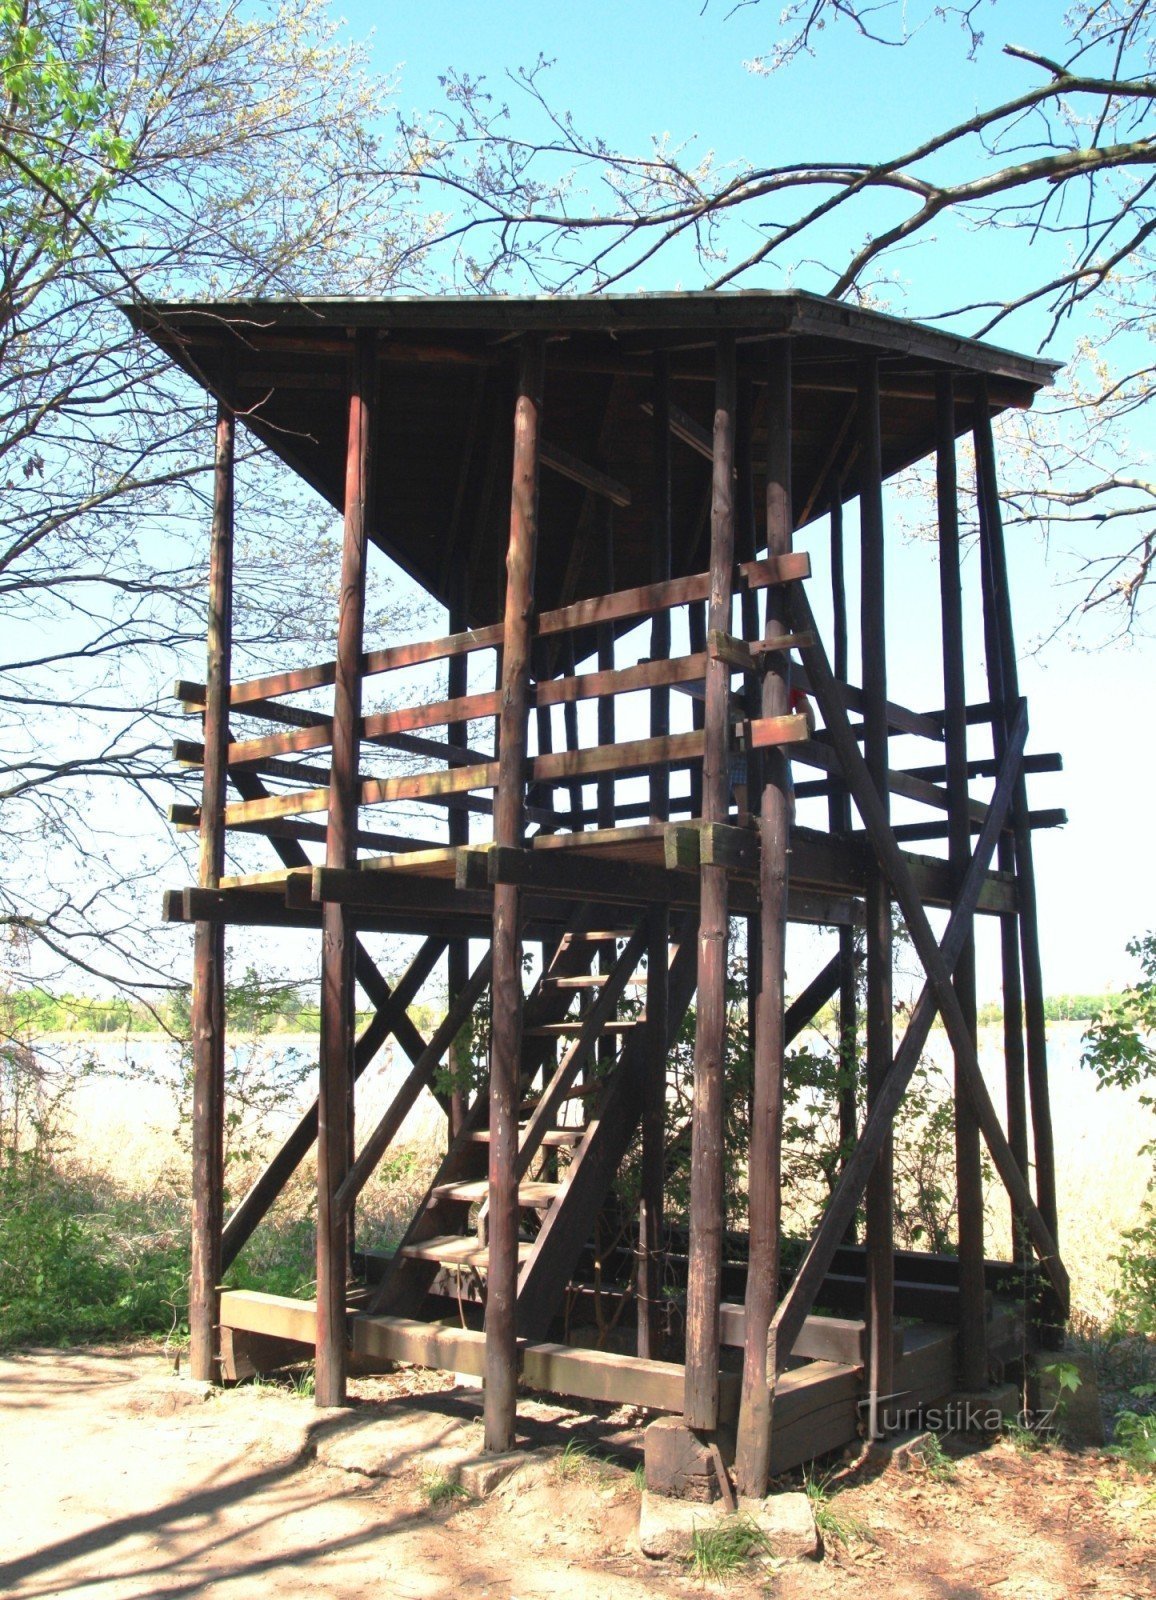 La antigua torre de observación en la parada No. 12